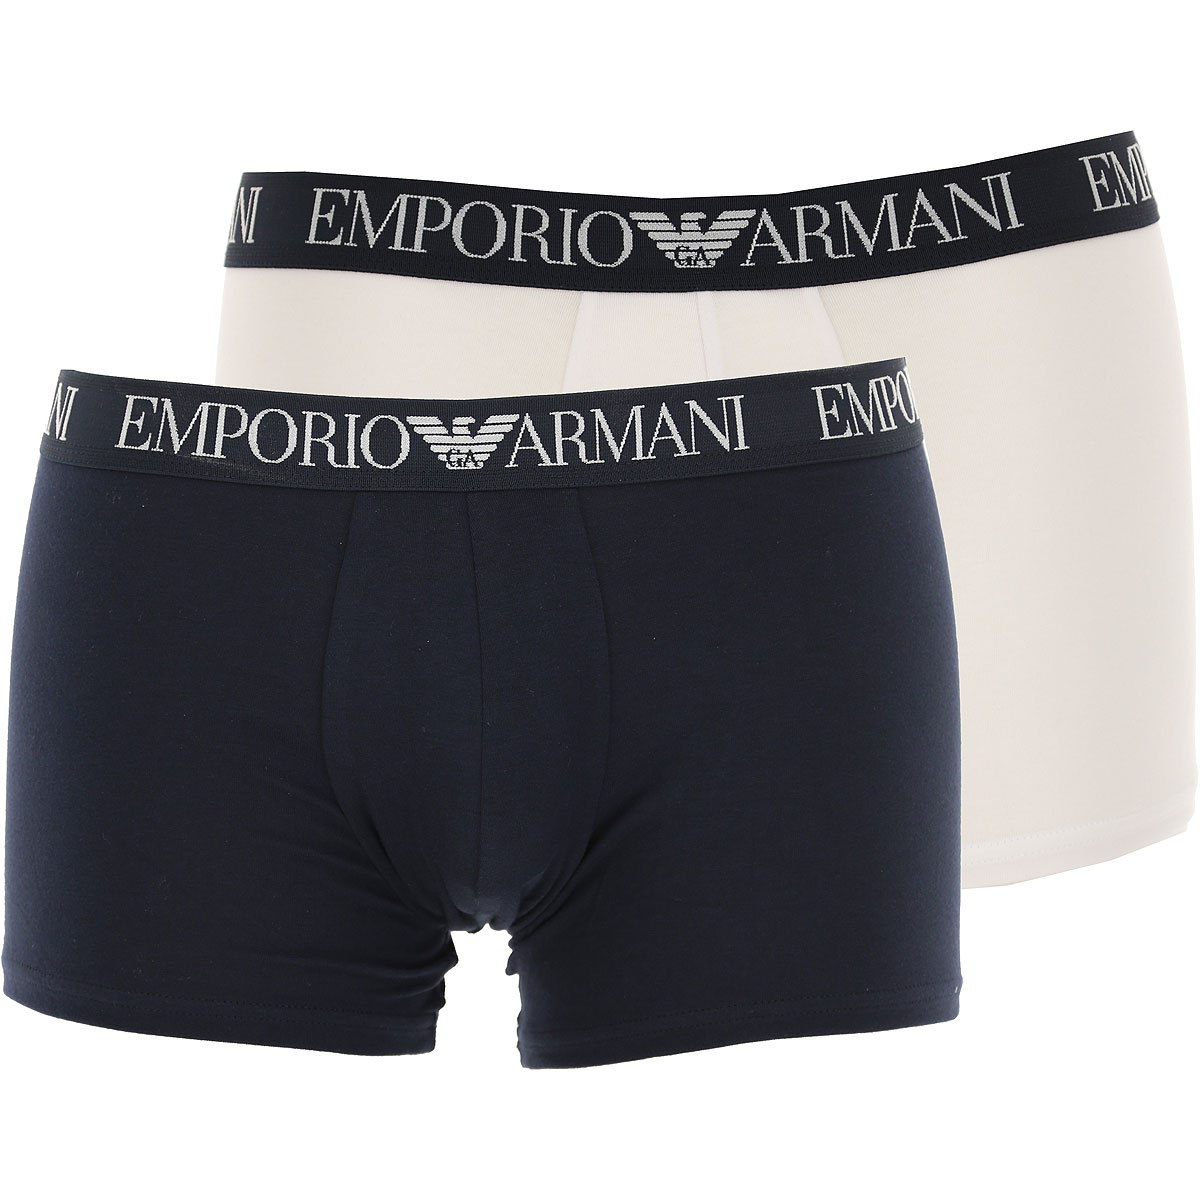 Emporio Armani Boxer Shorts für Herren, Unterhose, Short, Boxer Günstig im Sale, Blau, Baumwolle, 2017, L XL